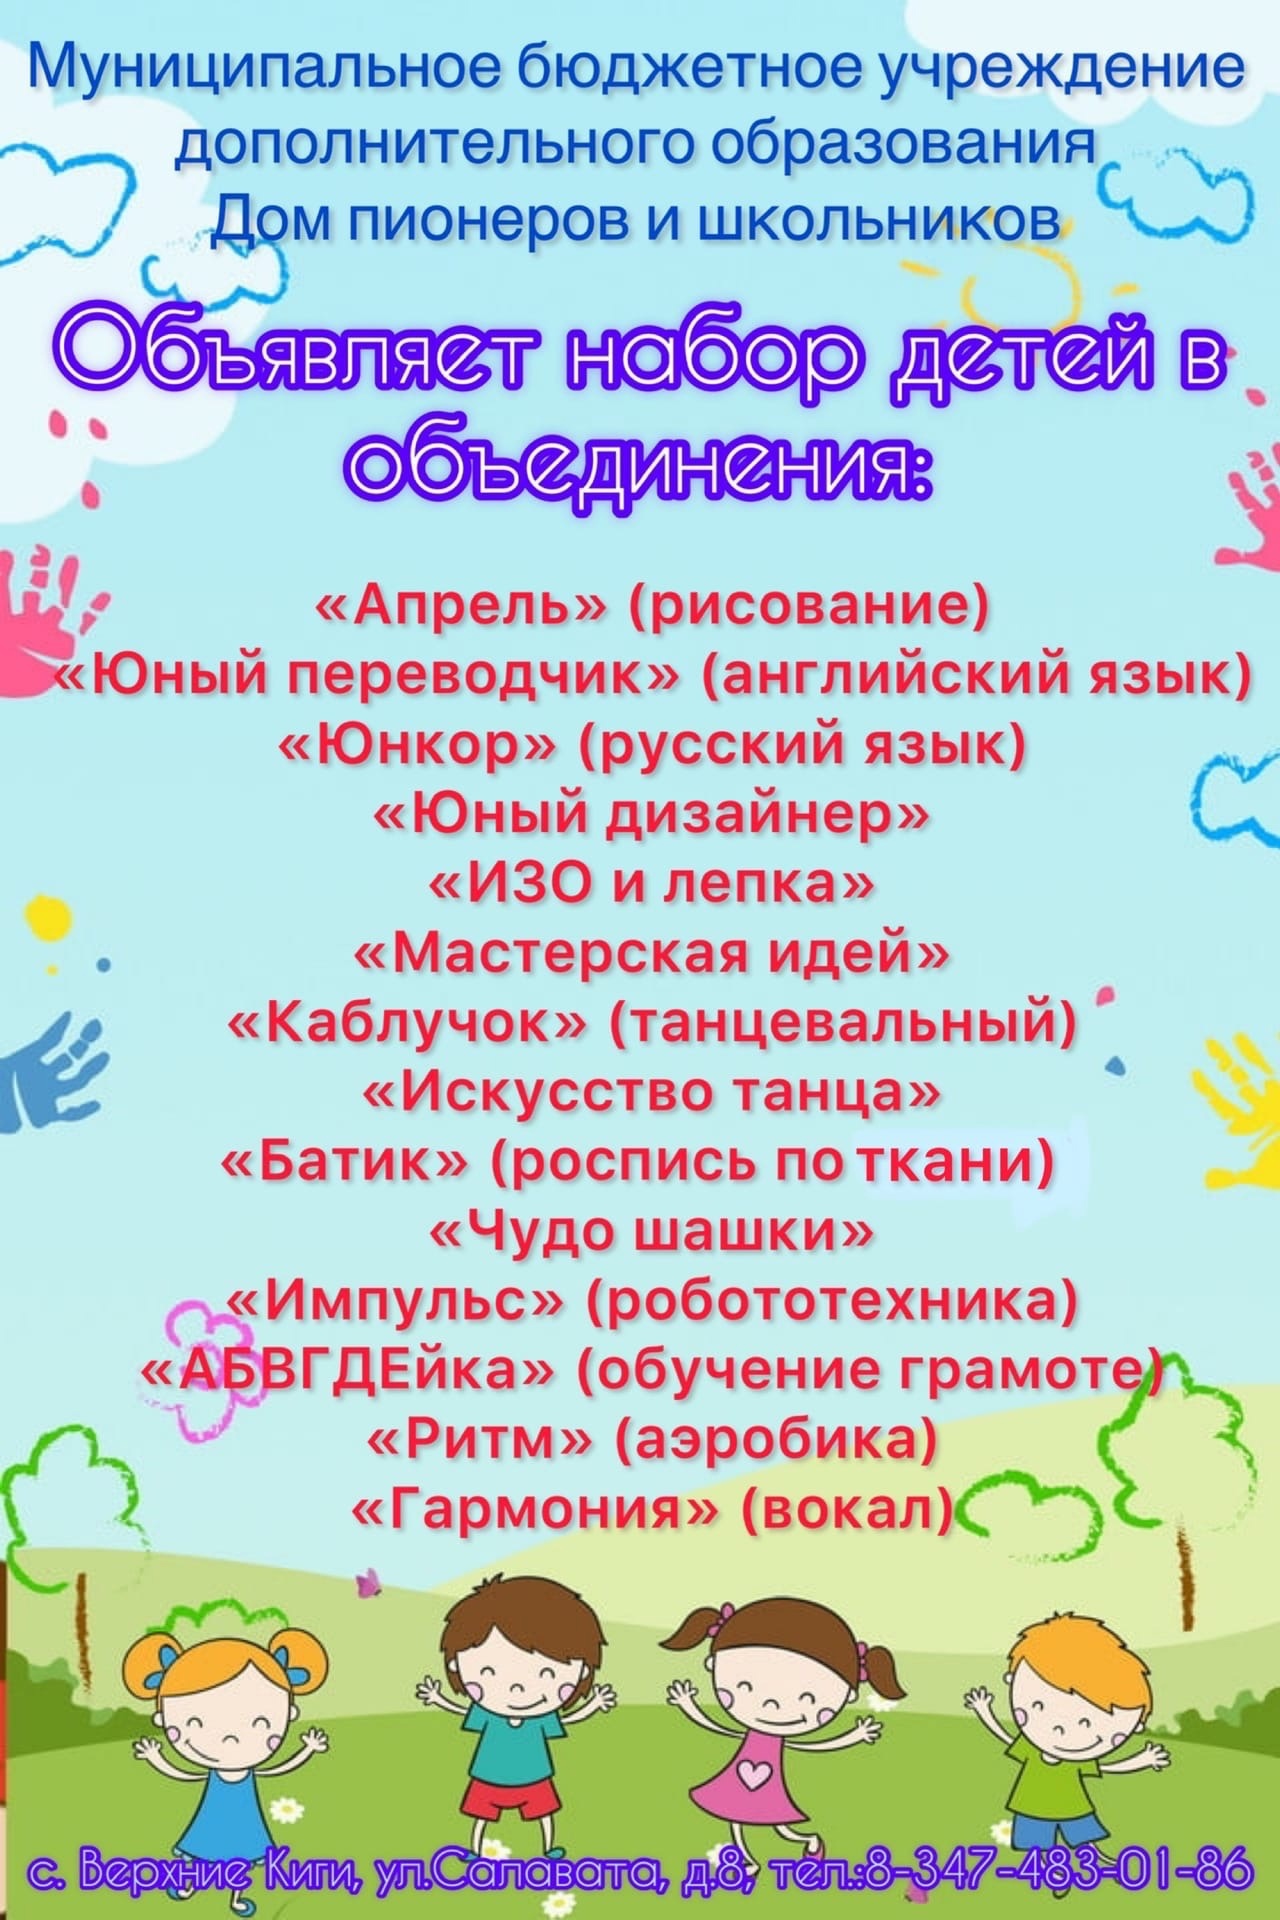 ДПиШ Кигинского района приглашает детей в разные кружки